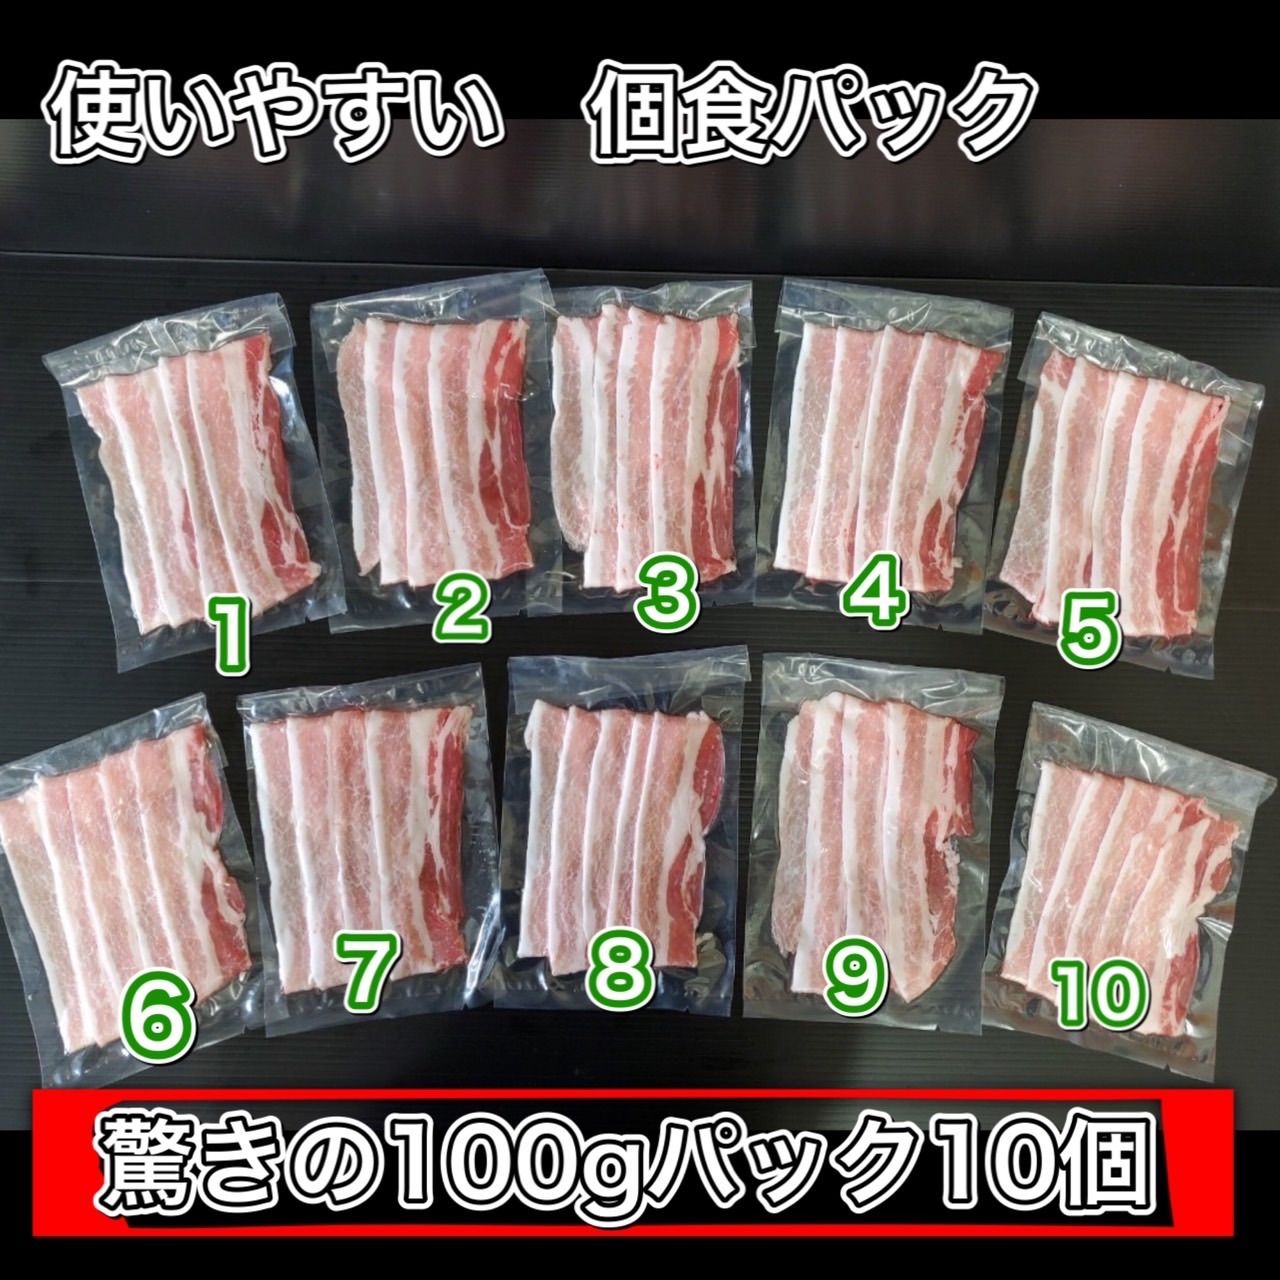 【家庭応援】 豚バラうす切り1kg✨超小分けの100グラム❗️高品質輸入産地-1